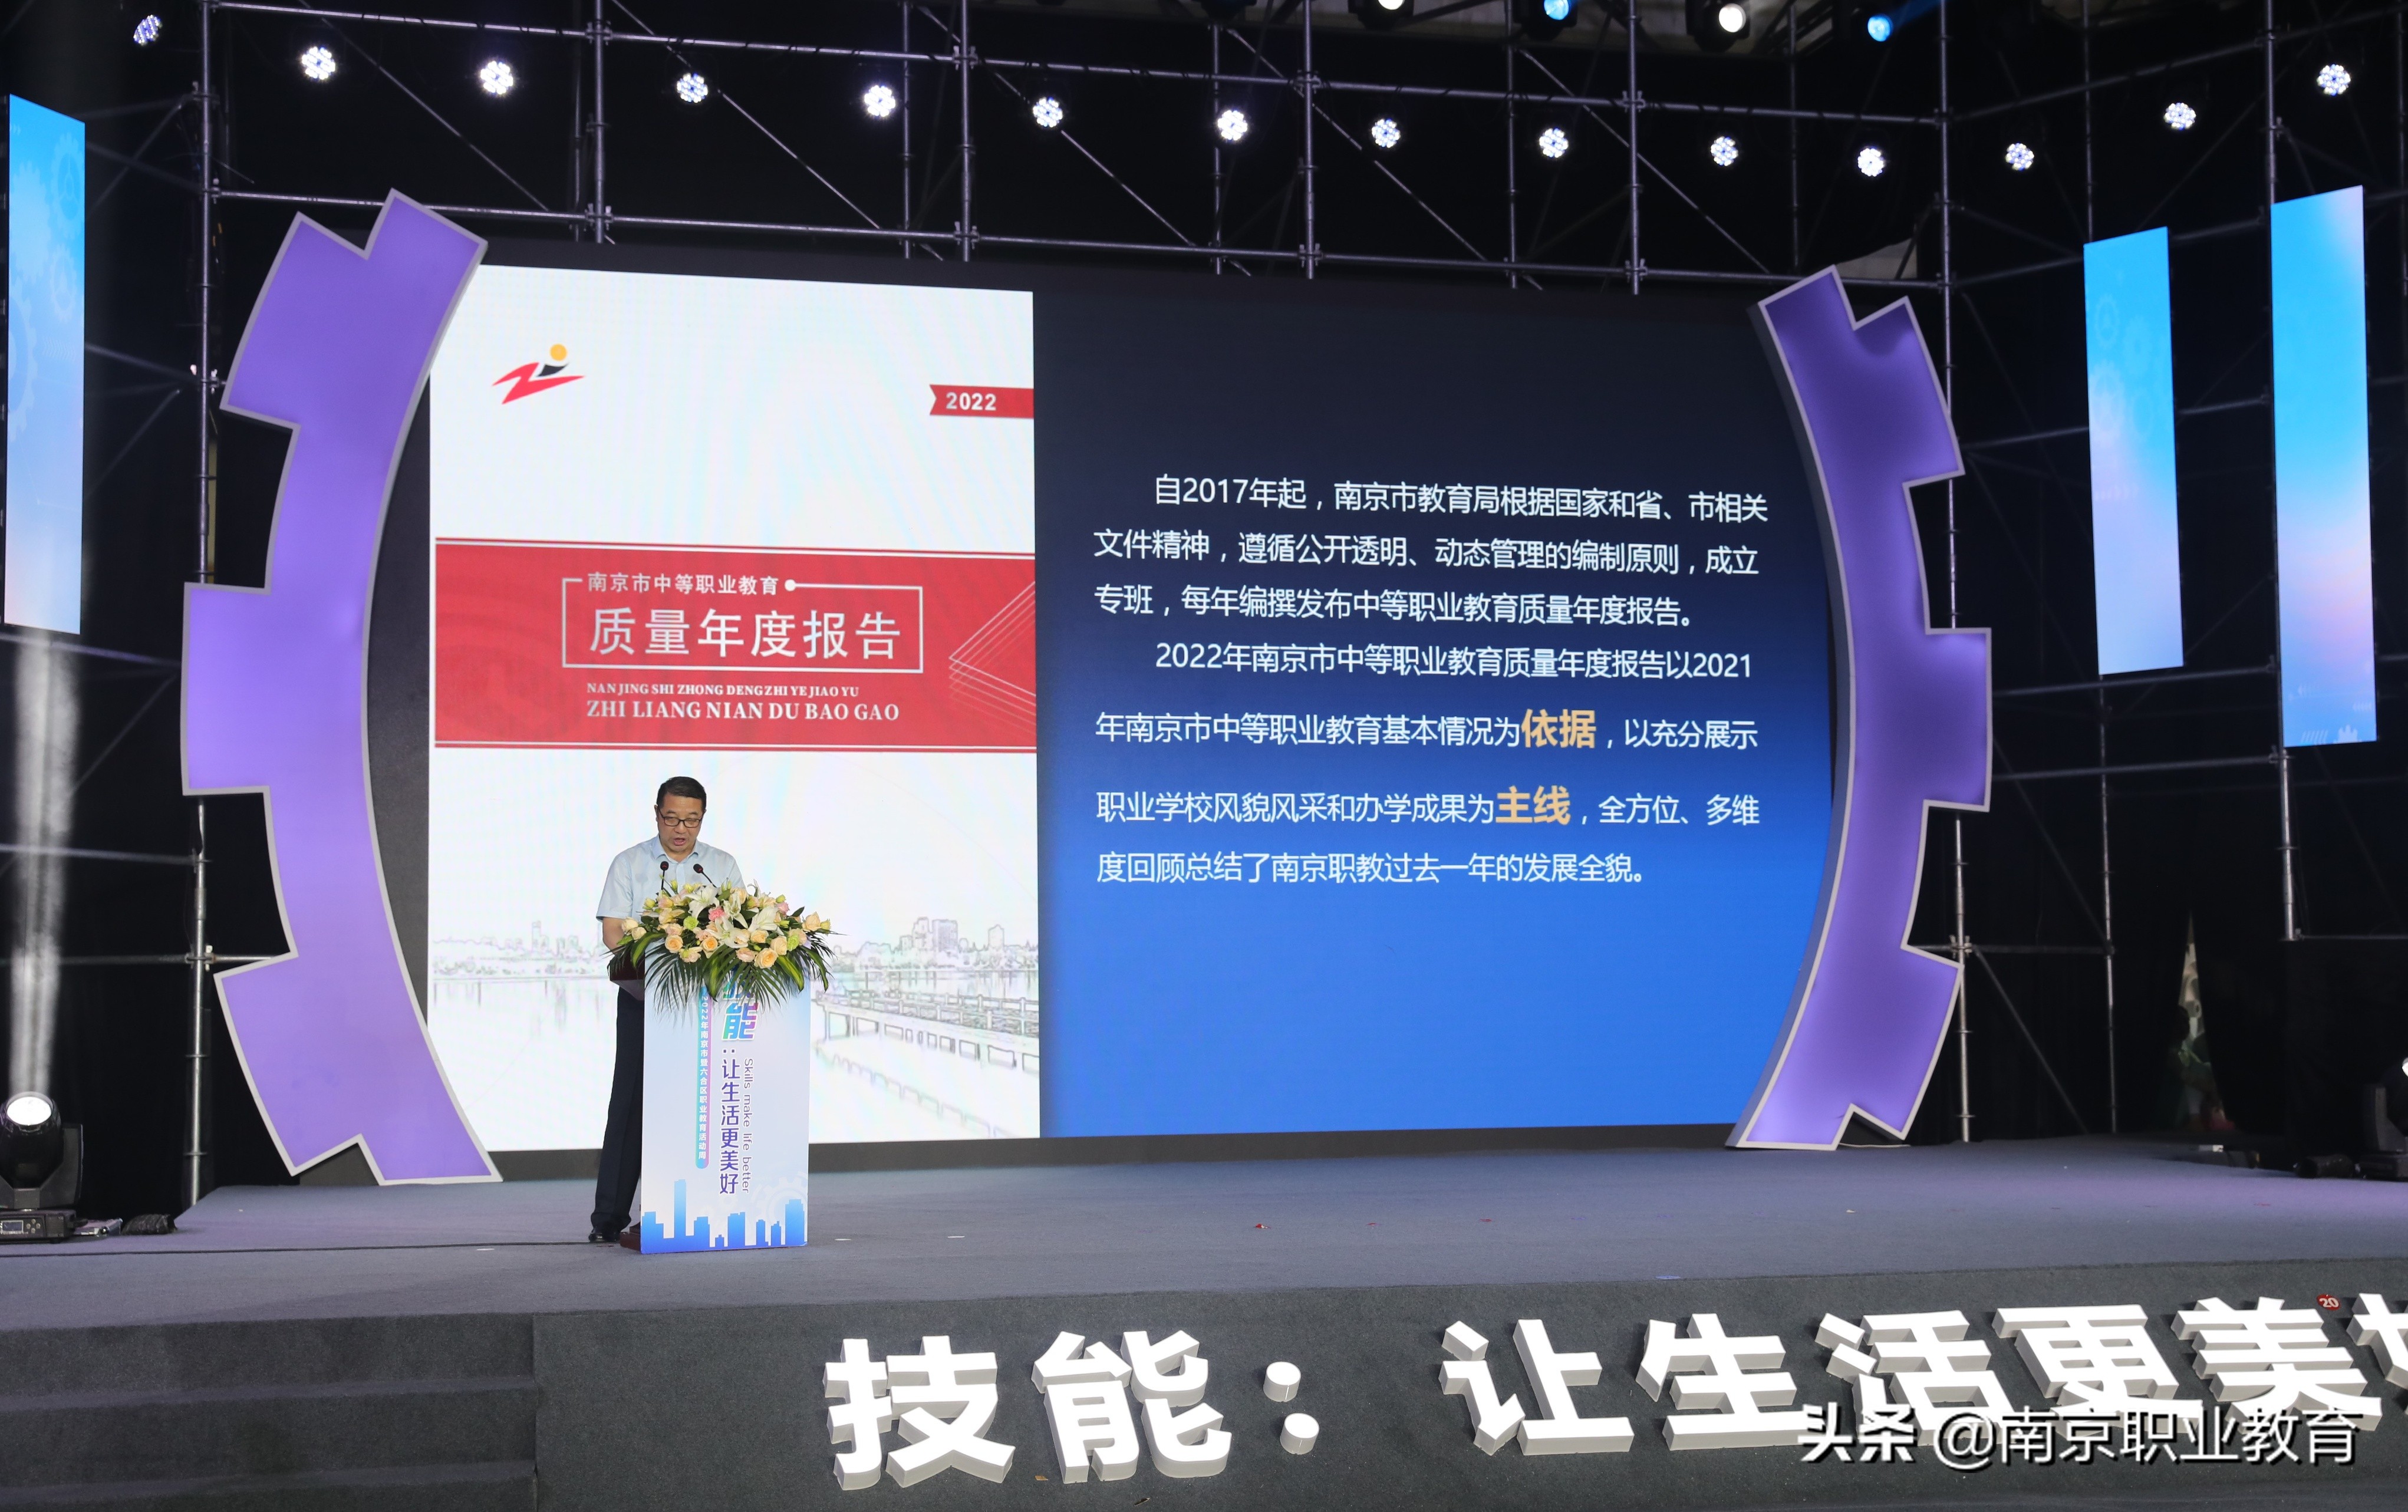 2022年南京市暨六合区职业教育活动周启动仪式举行